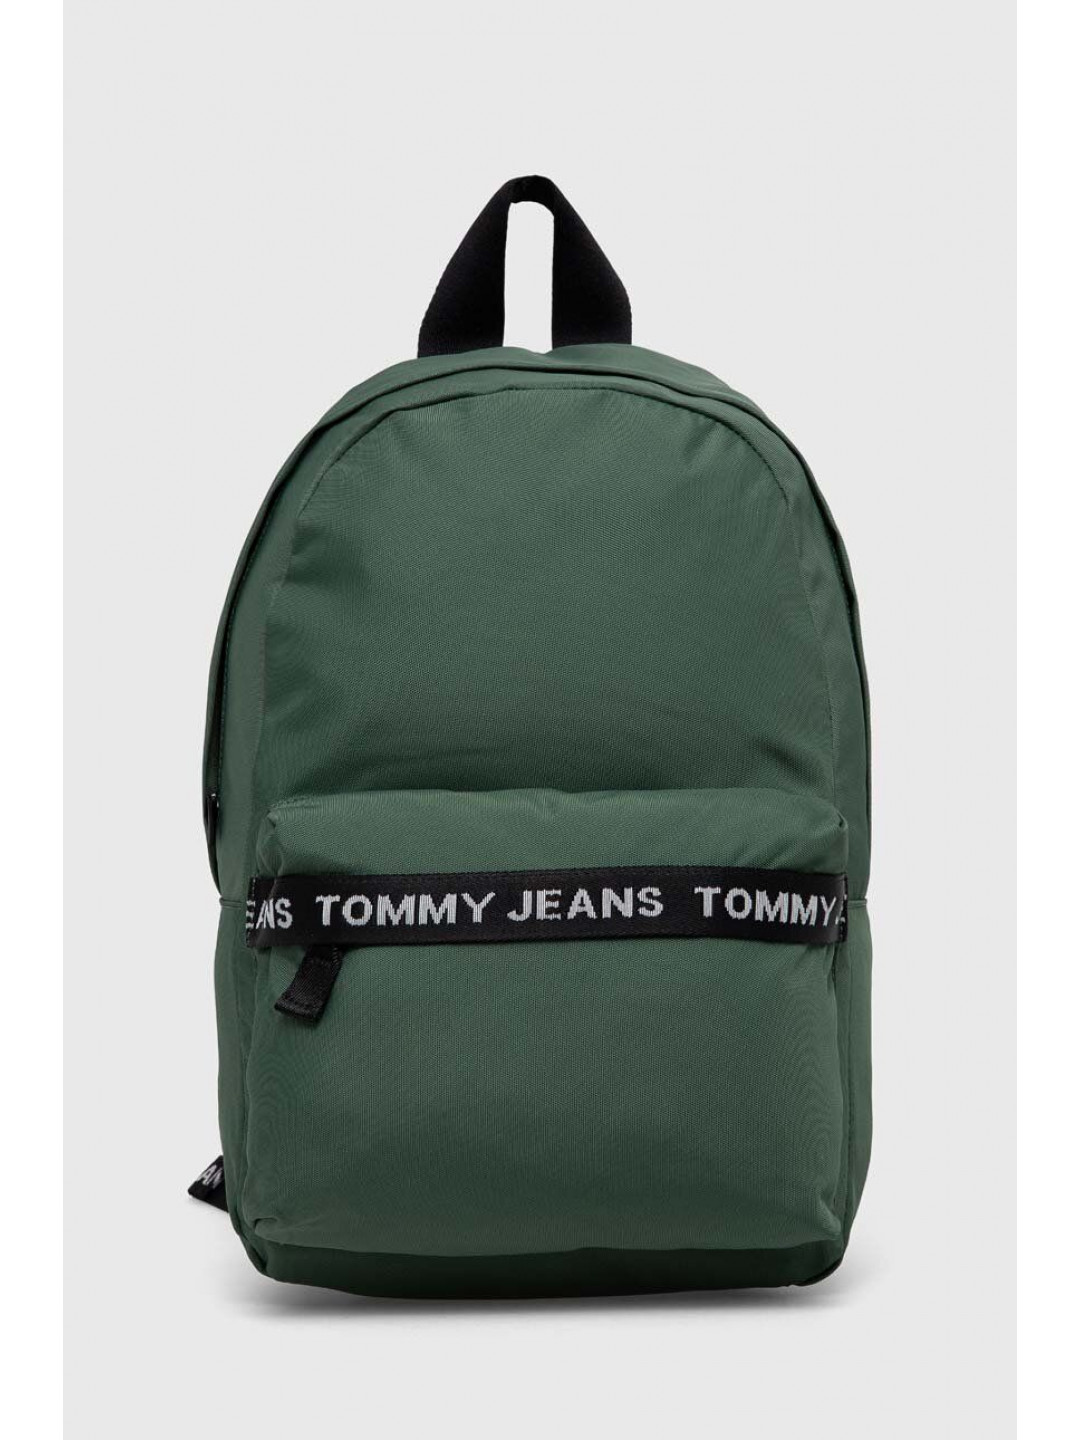 Batoh Tommy Jeans pánský zelená barva velký s potiskem